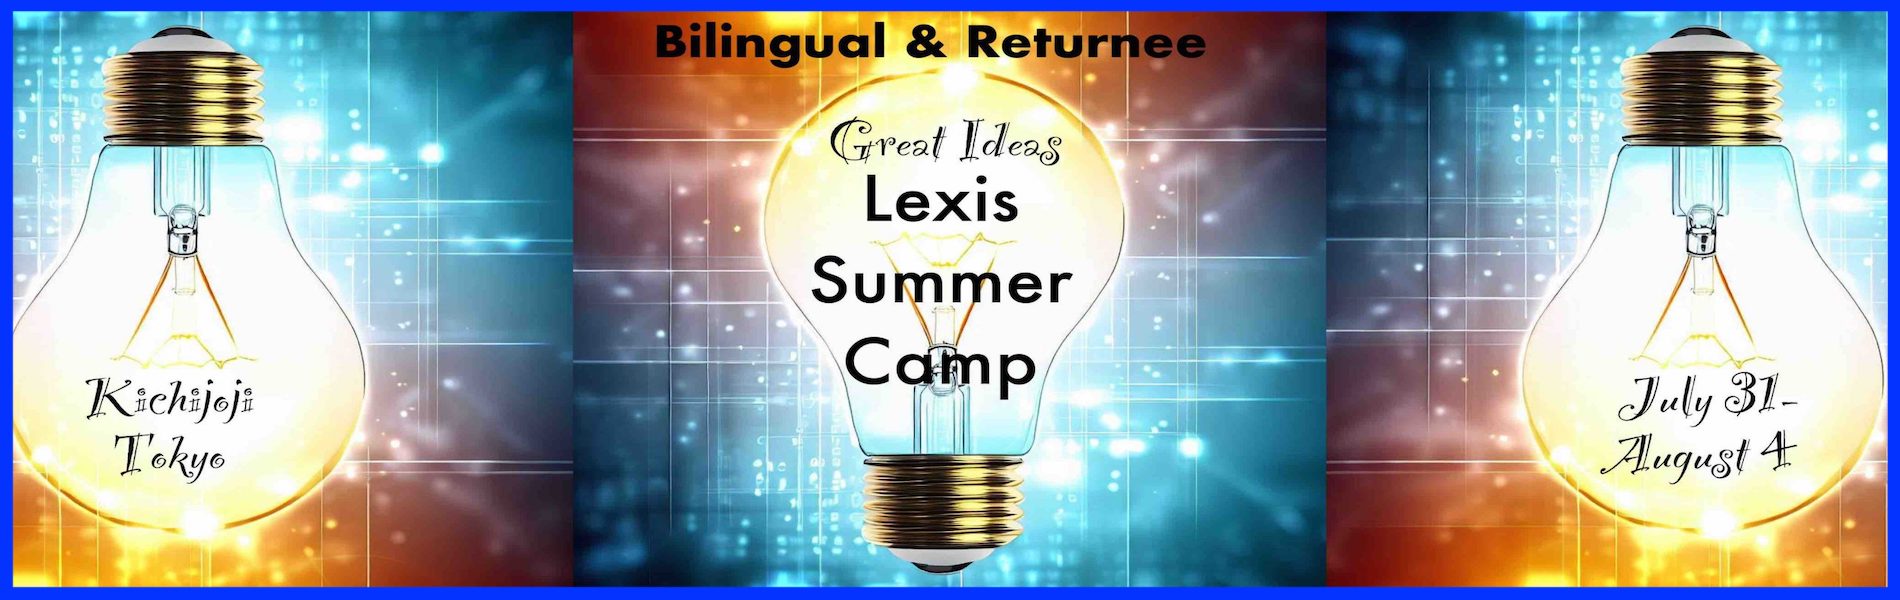 レクシス夏休みSummer Camp For Foreigners Returnees and Advanced English Speakers 1-6 grade